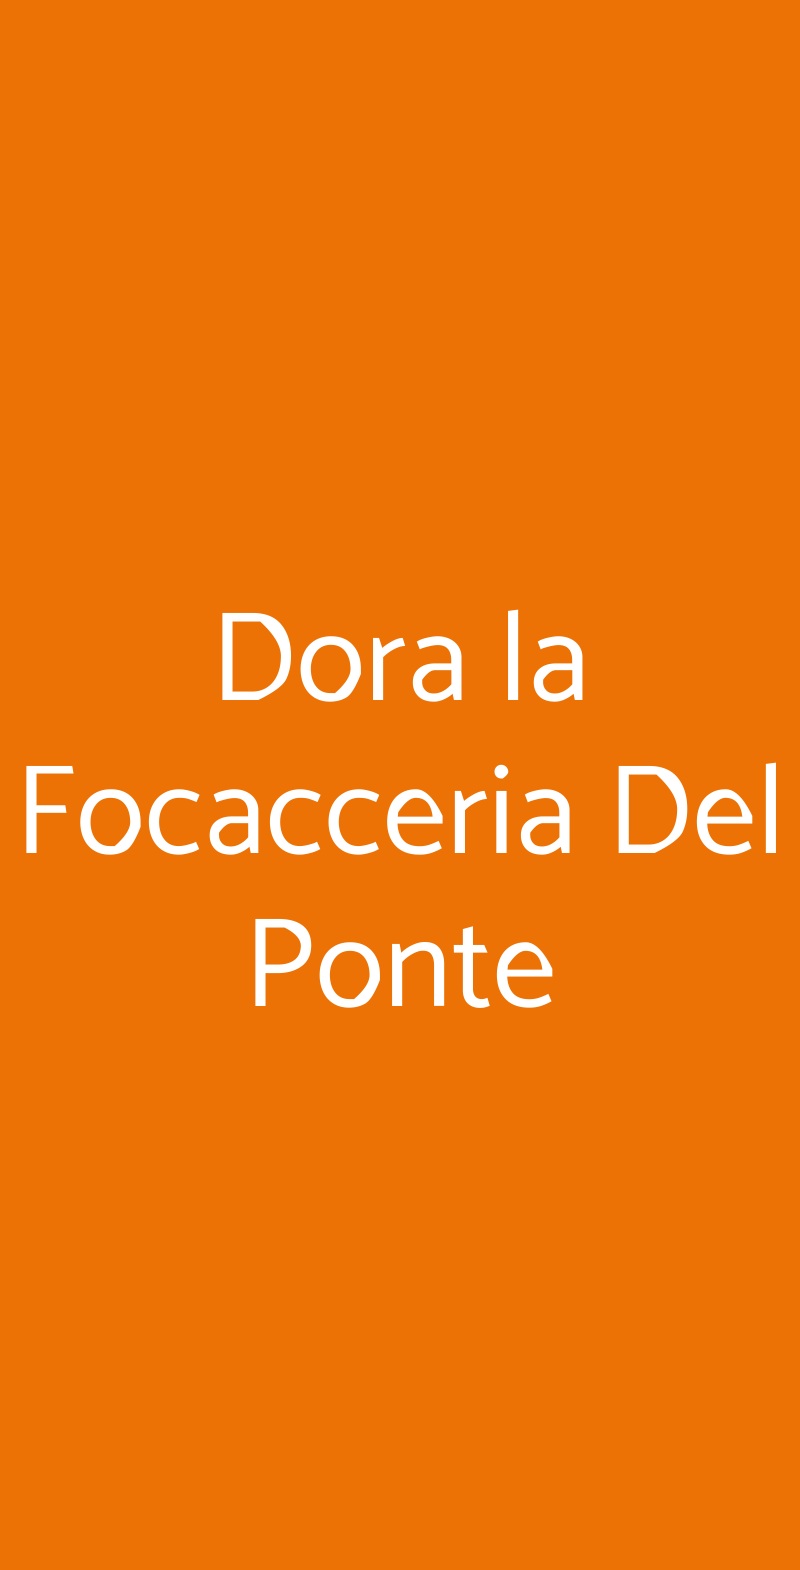 Dora la Focacceria Del Ponte Torino menù 1 pagina